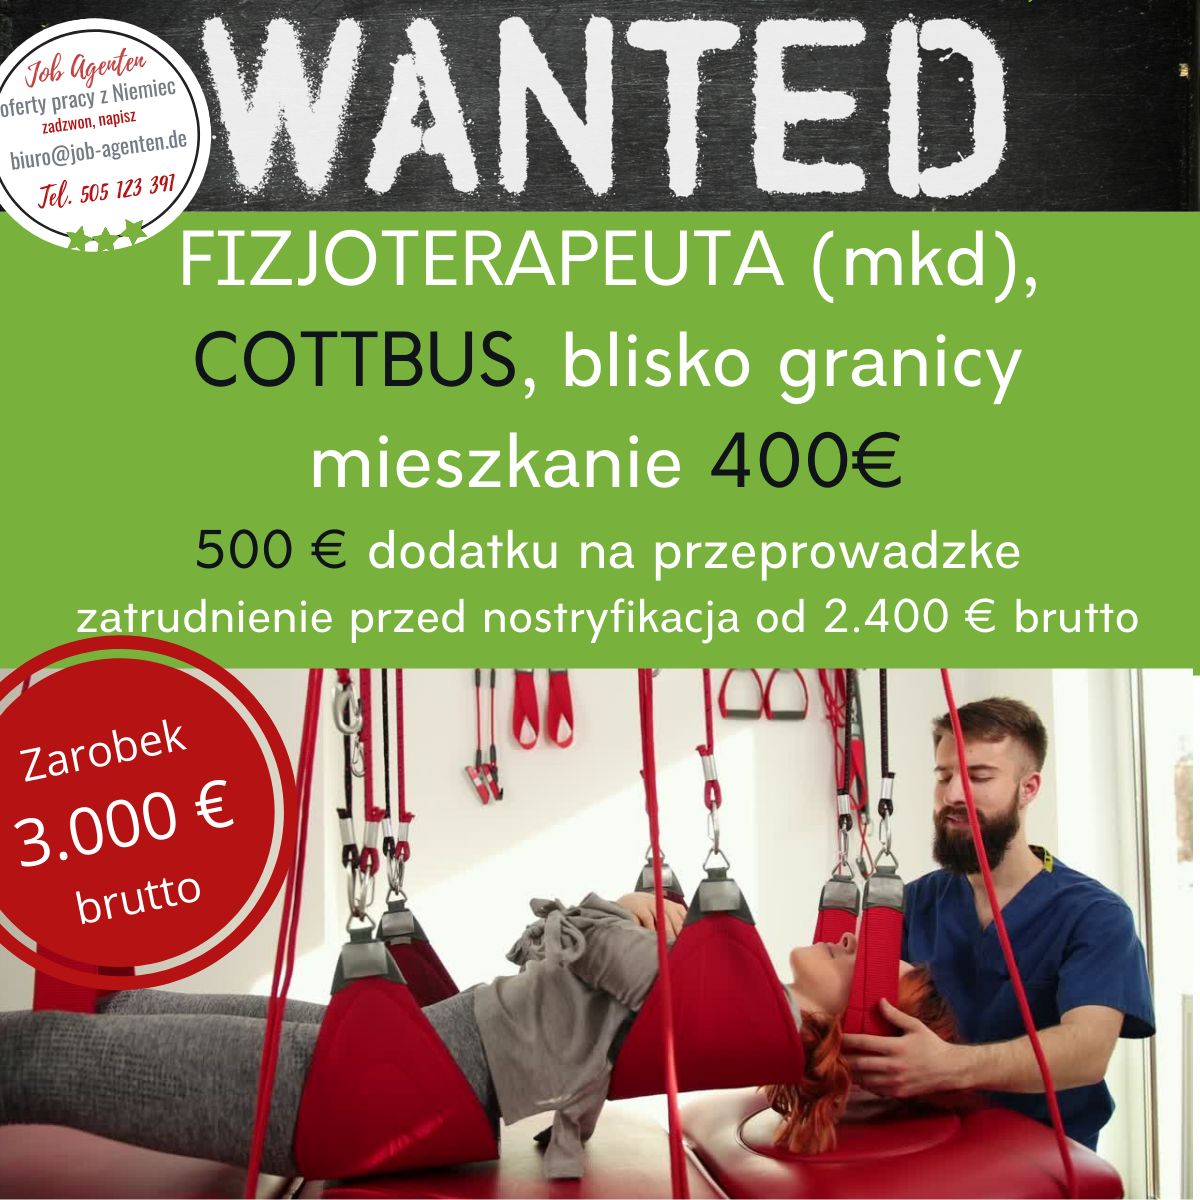 FIZJOTERAPEUTA (mkd),zatrudnienie przed nostryfikacją w Cottbus 